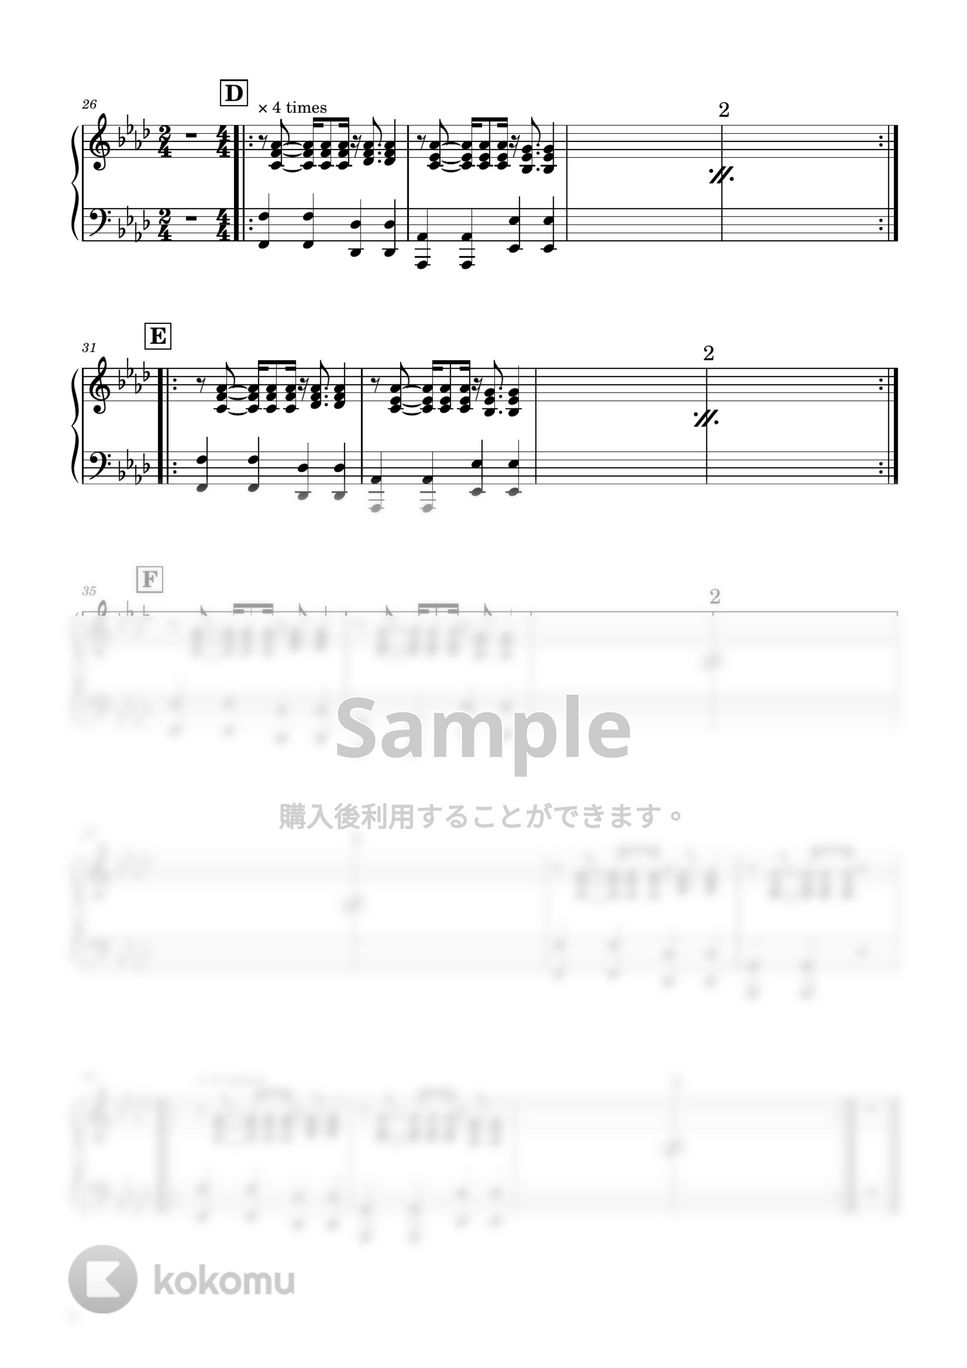 Orangestar - Nadir (ピアノパート) by Lyno